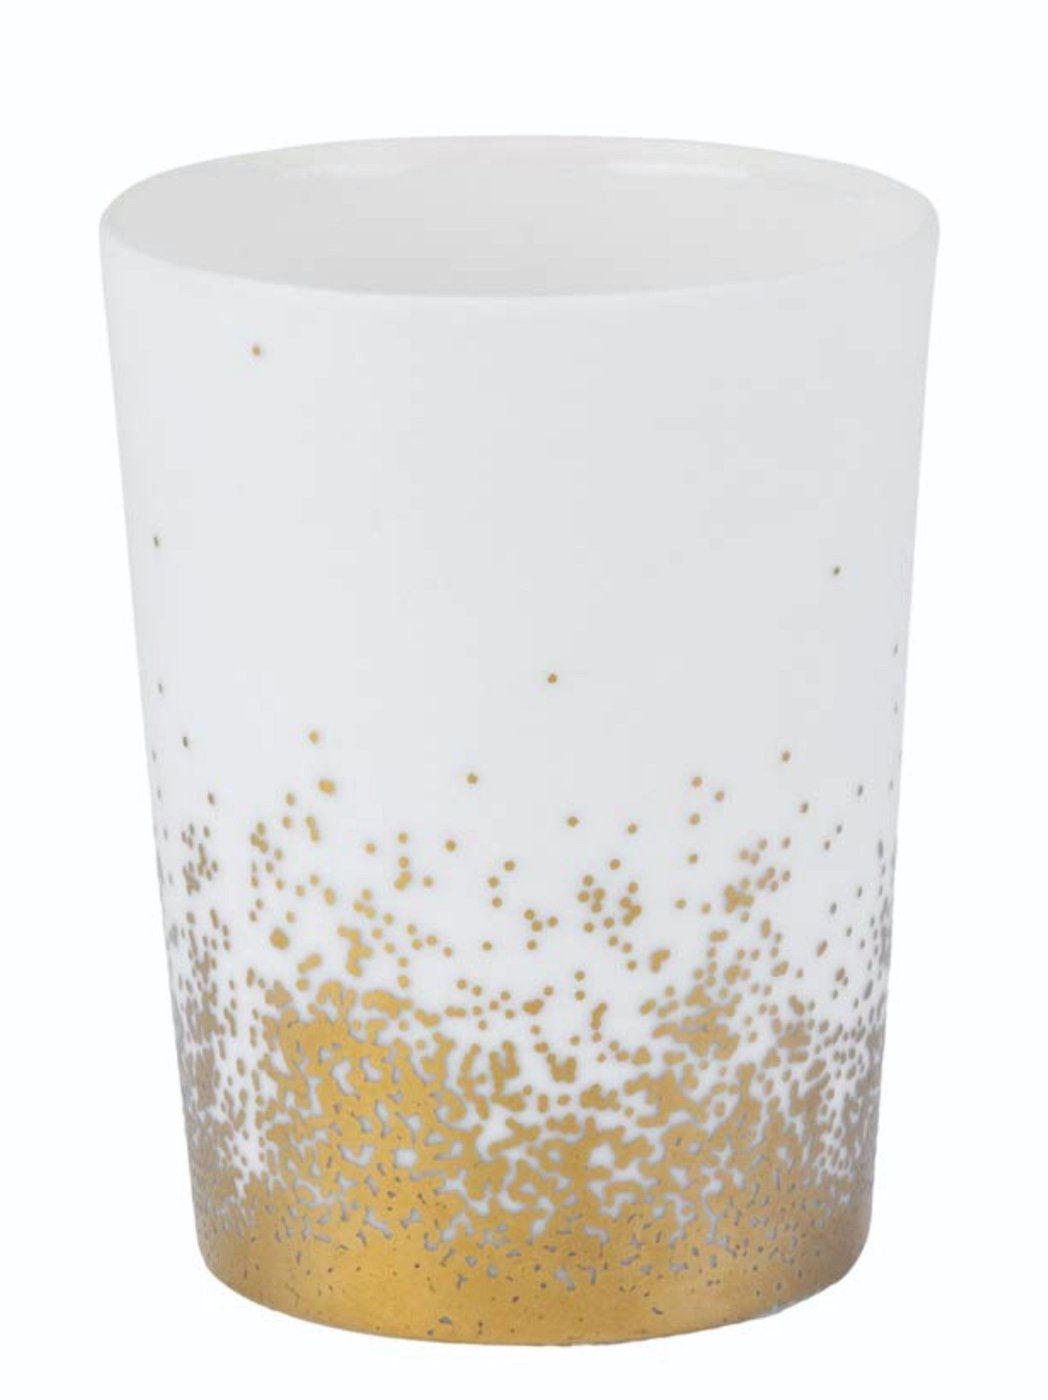 Räder Design Teelichthalter LIVING Goldstaub Lichter klein Porzellan weiß gold H8cm